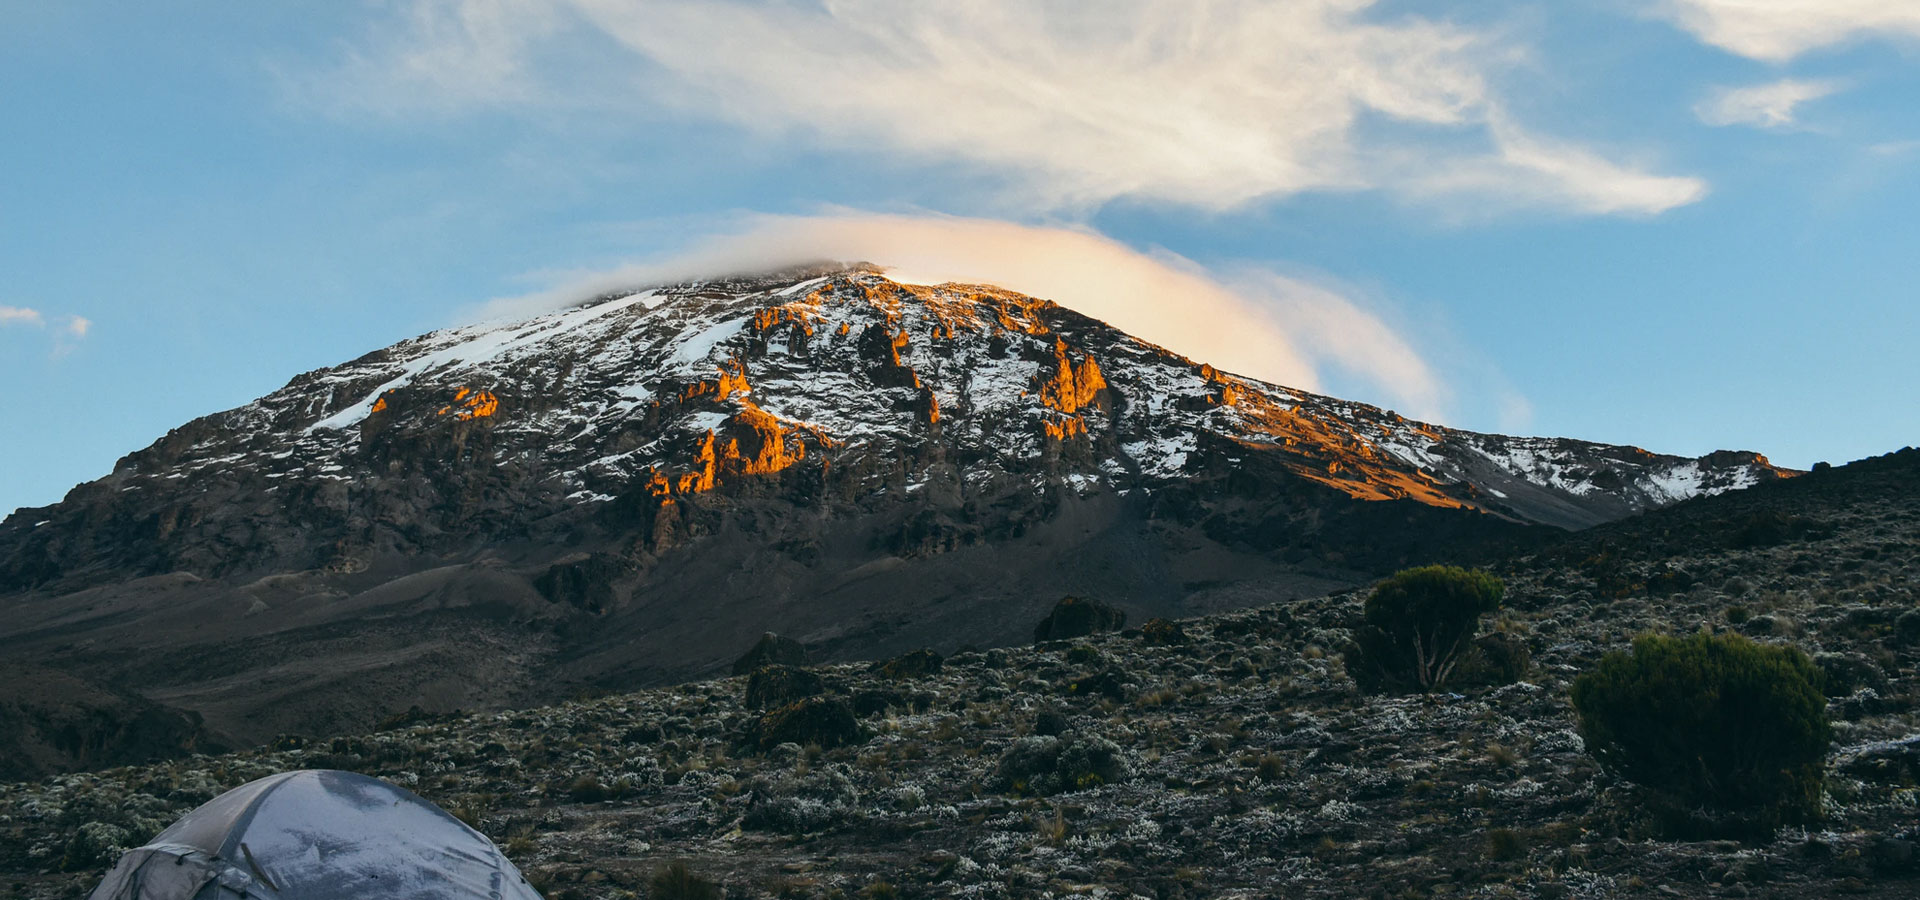 Climbing Mount Kilimanjaro Guide